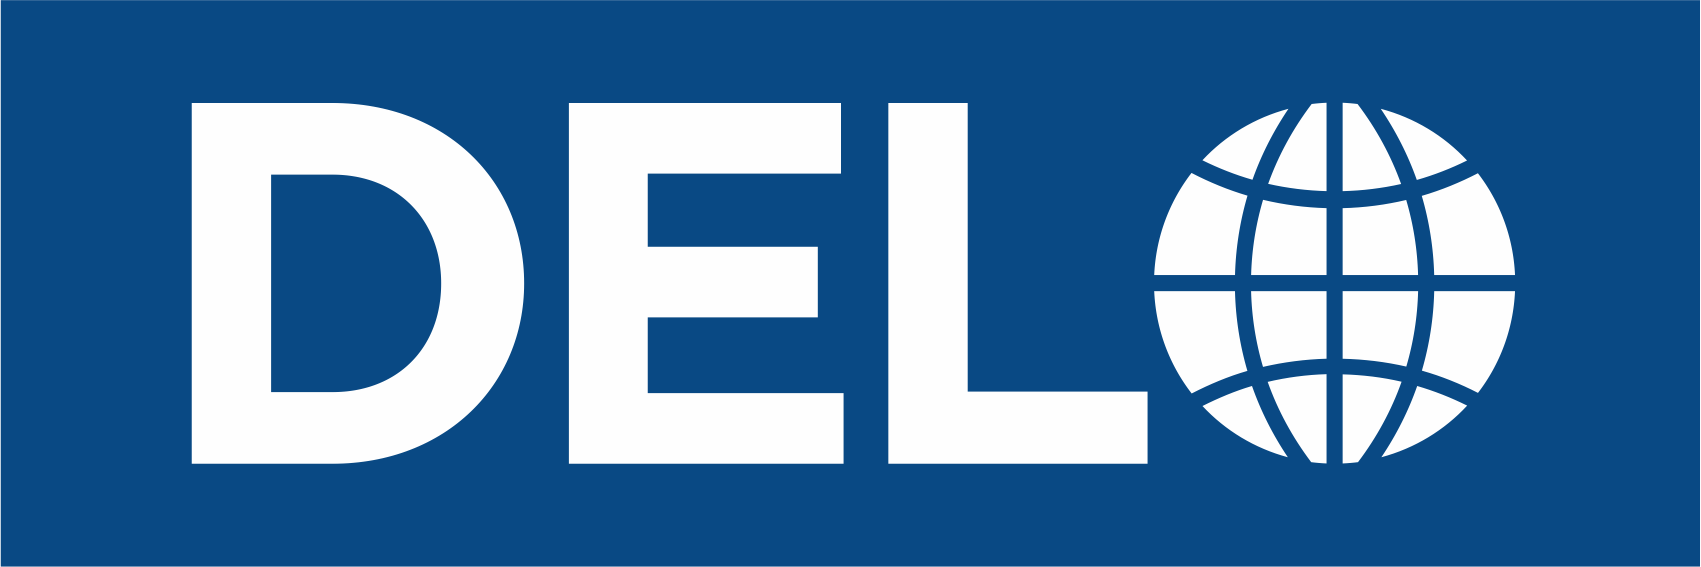 Delo logo blue